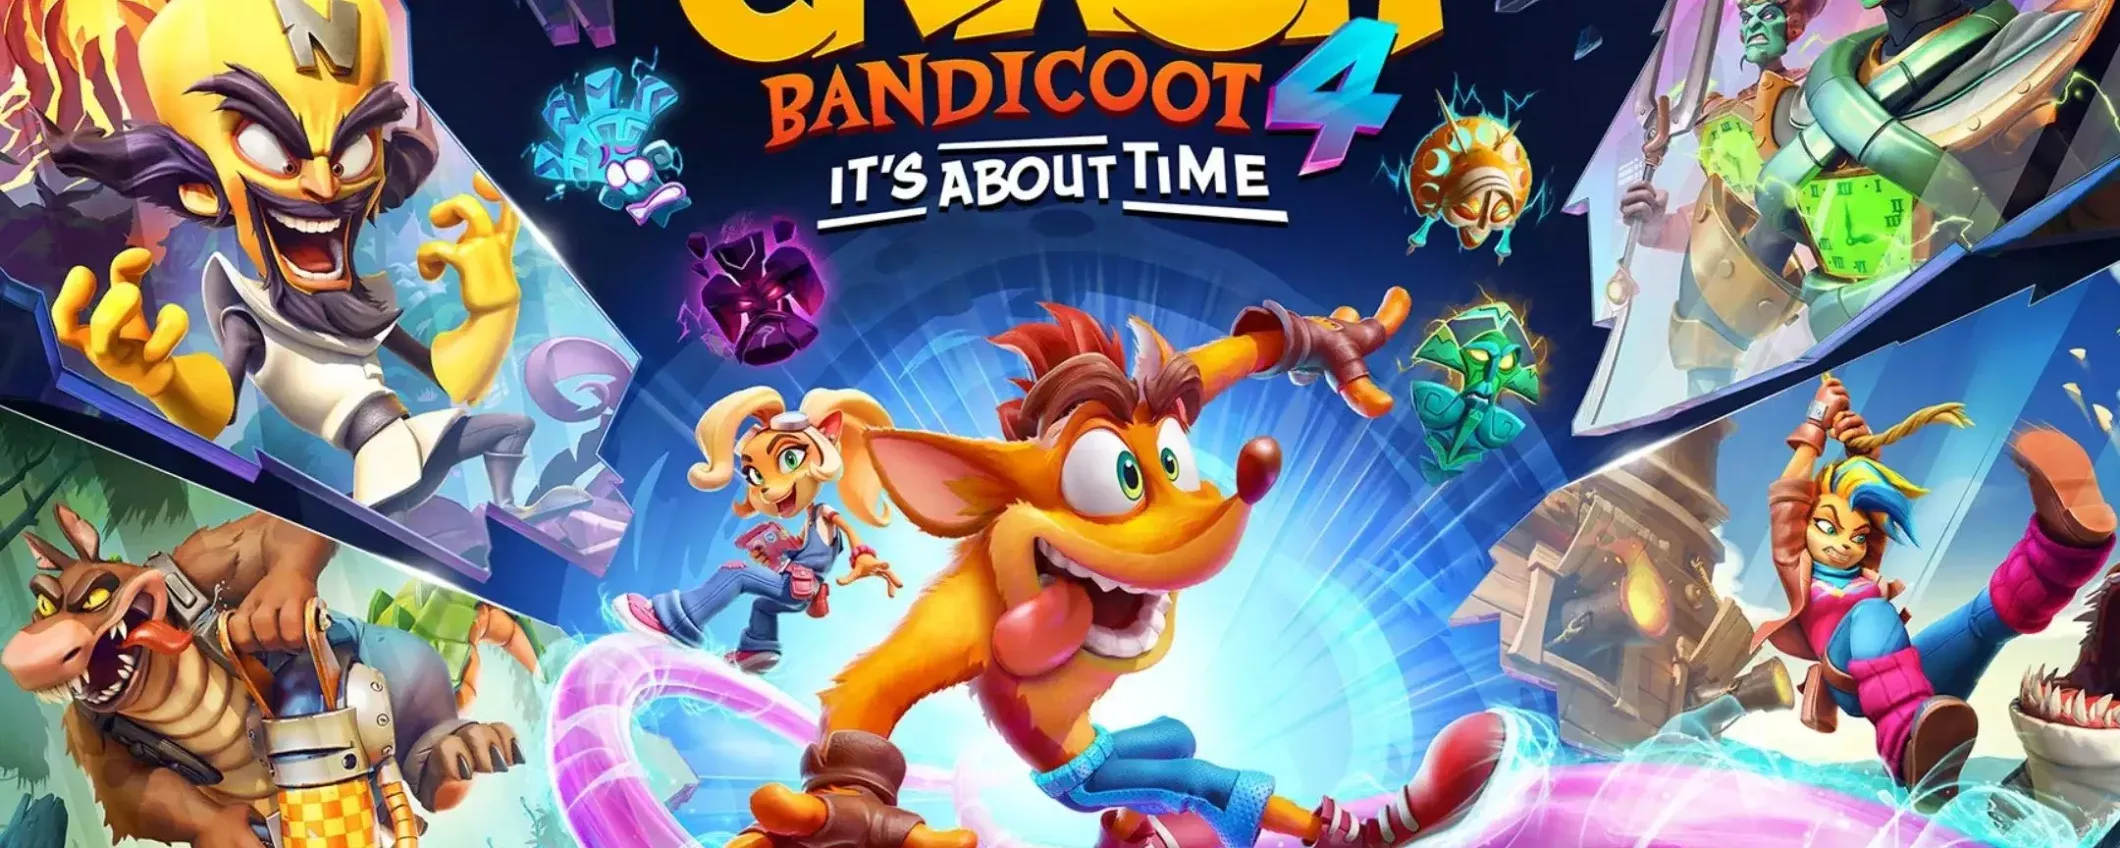 Crash Bandicoot 4 per PS4 a meno di 30€: divertimento TOP, prezzo low-cost